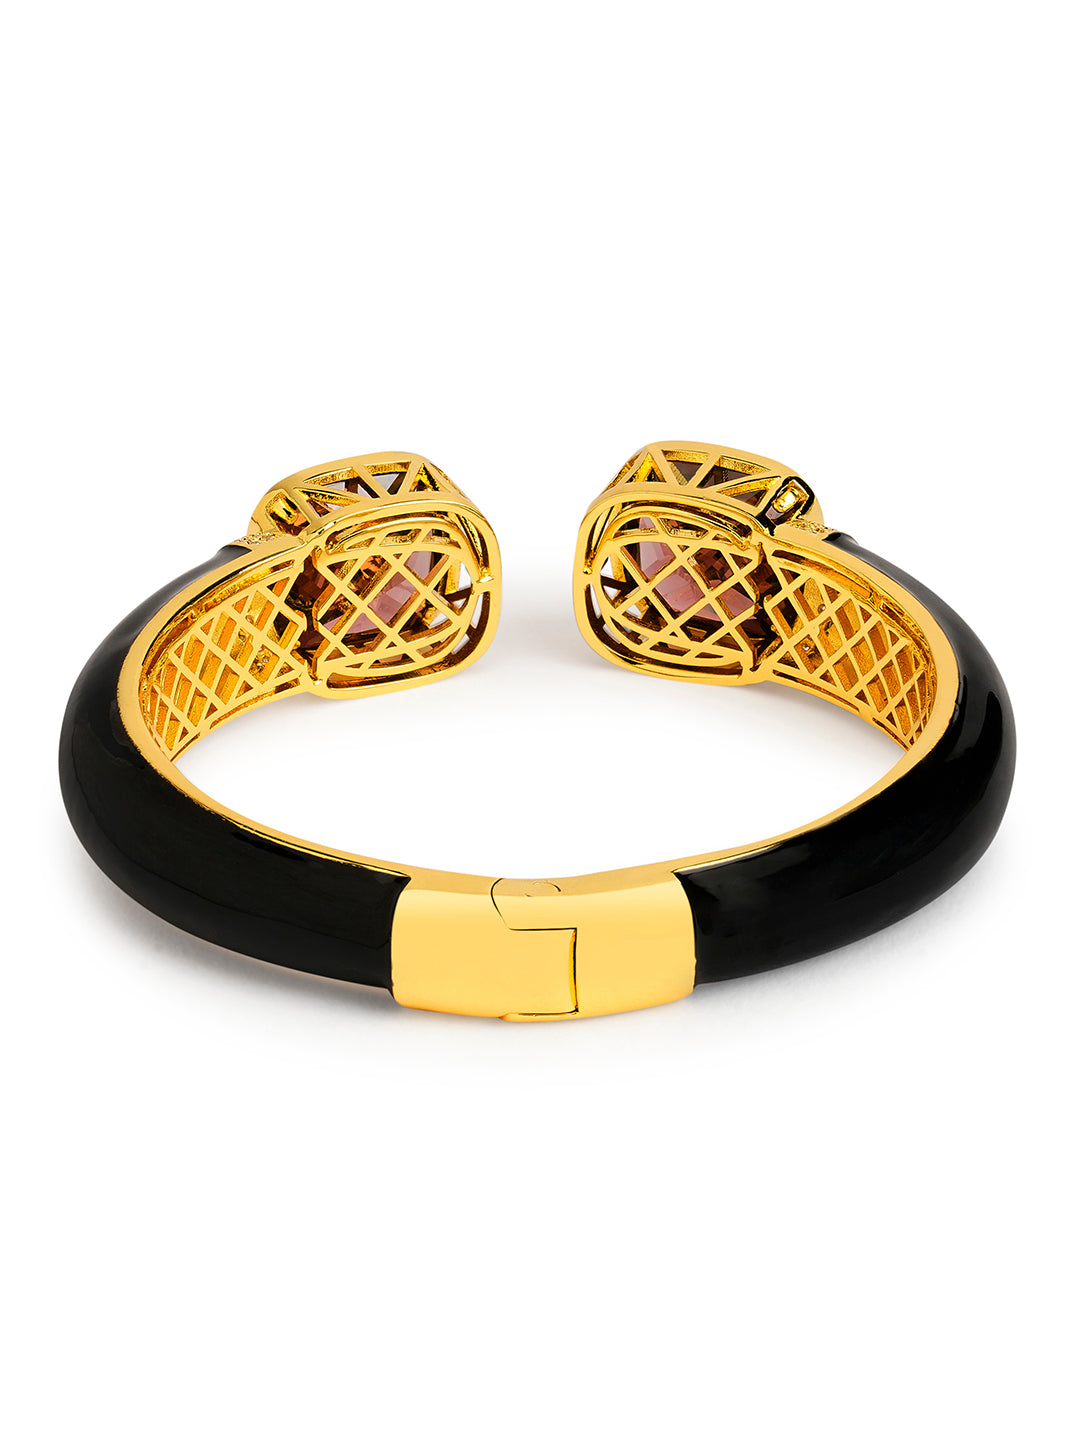 Buy Aksvita black thread bracelet black band for men bracelet for women  black adjustable avoid negative energy (black)(pack of 2) at Amazon.in